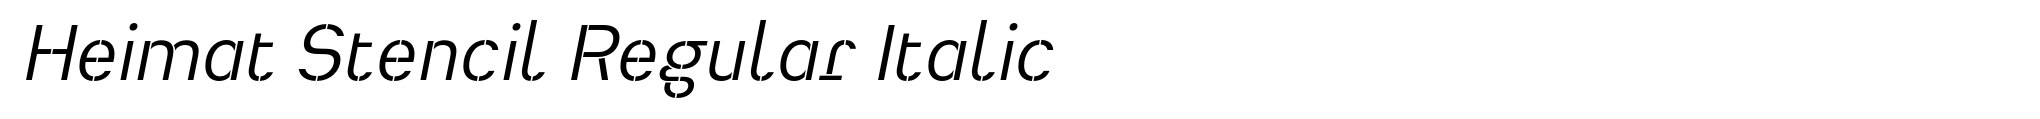 Heimat Stencil Regular Italic image